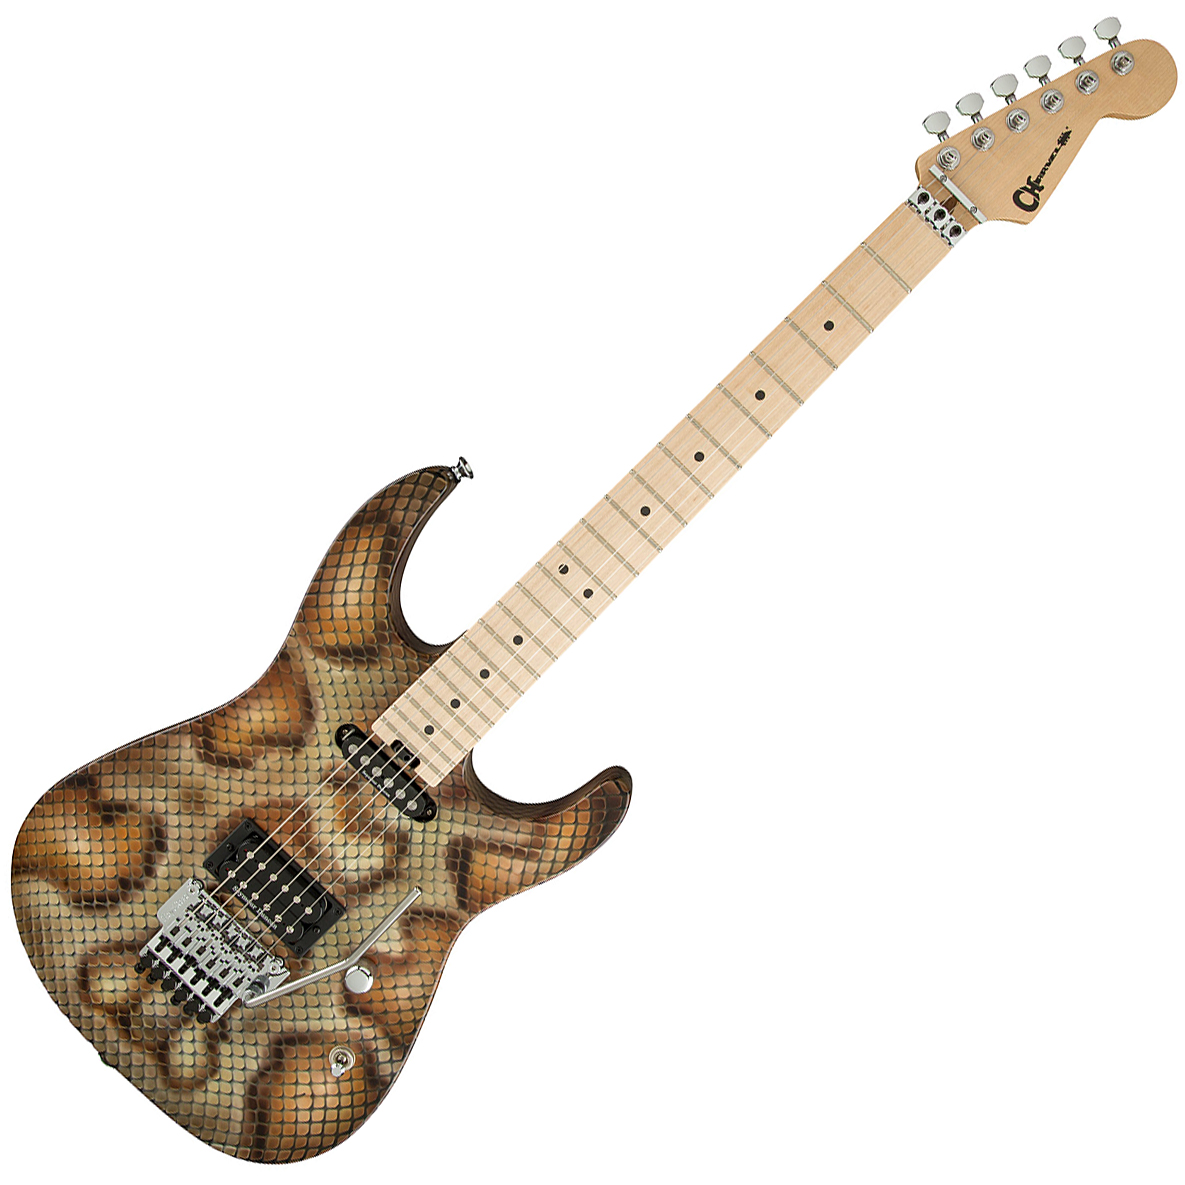 Charvel Warren Demartini Pro-mod Snake Signature Hs Fr Mn - Snakeskin - Str shape electric guitar - Variation 4